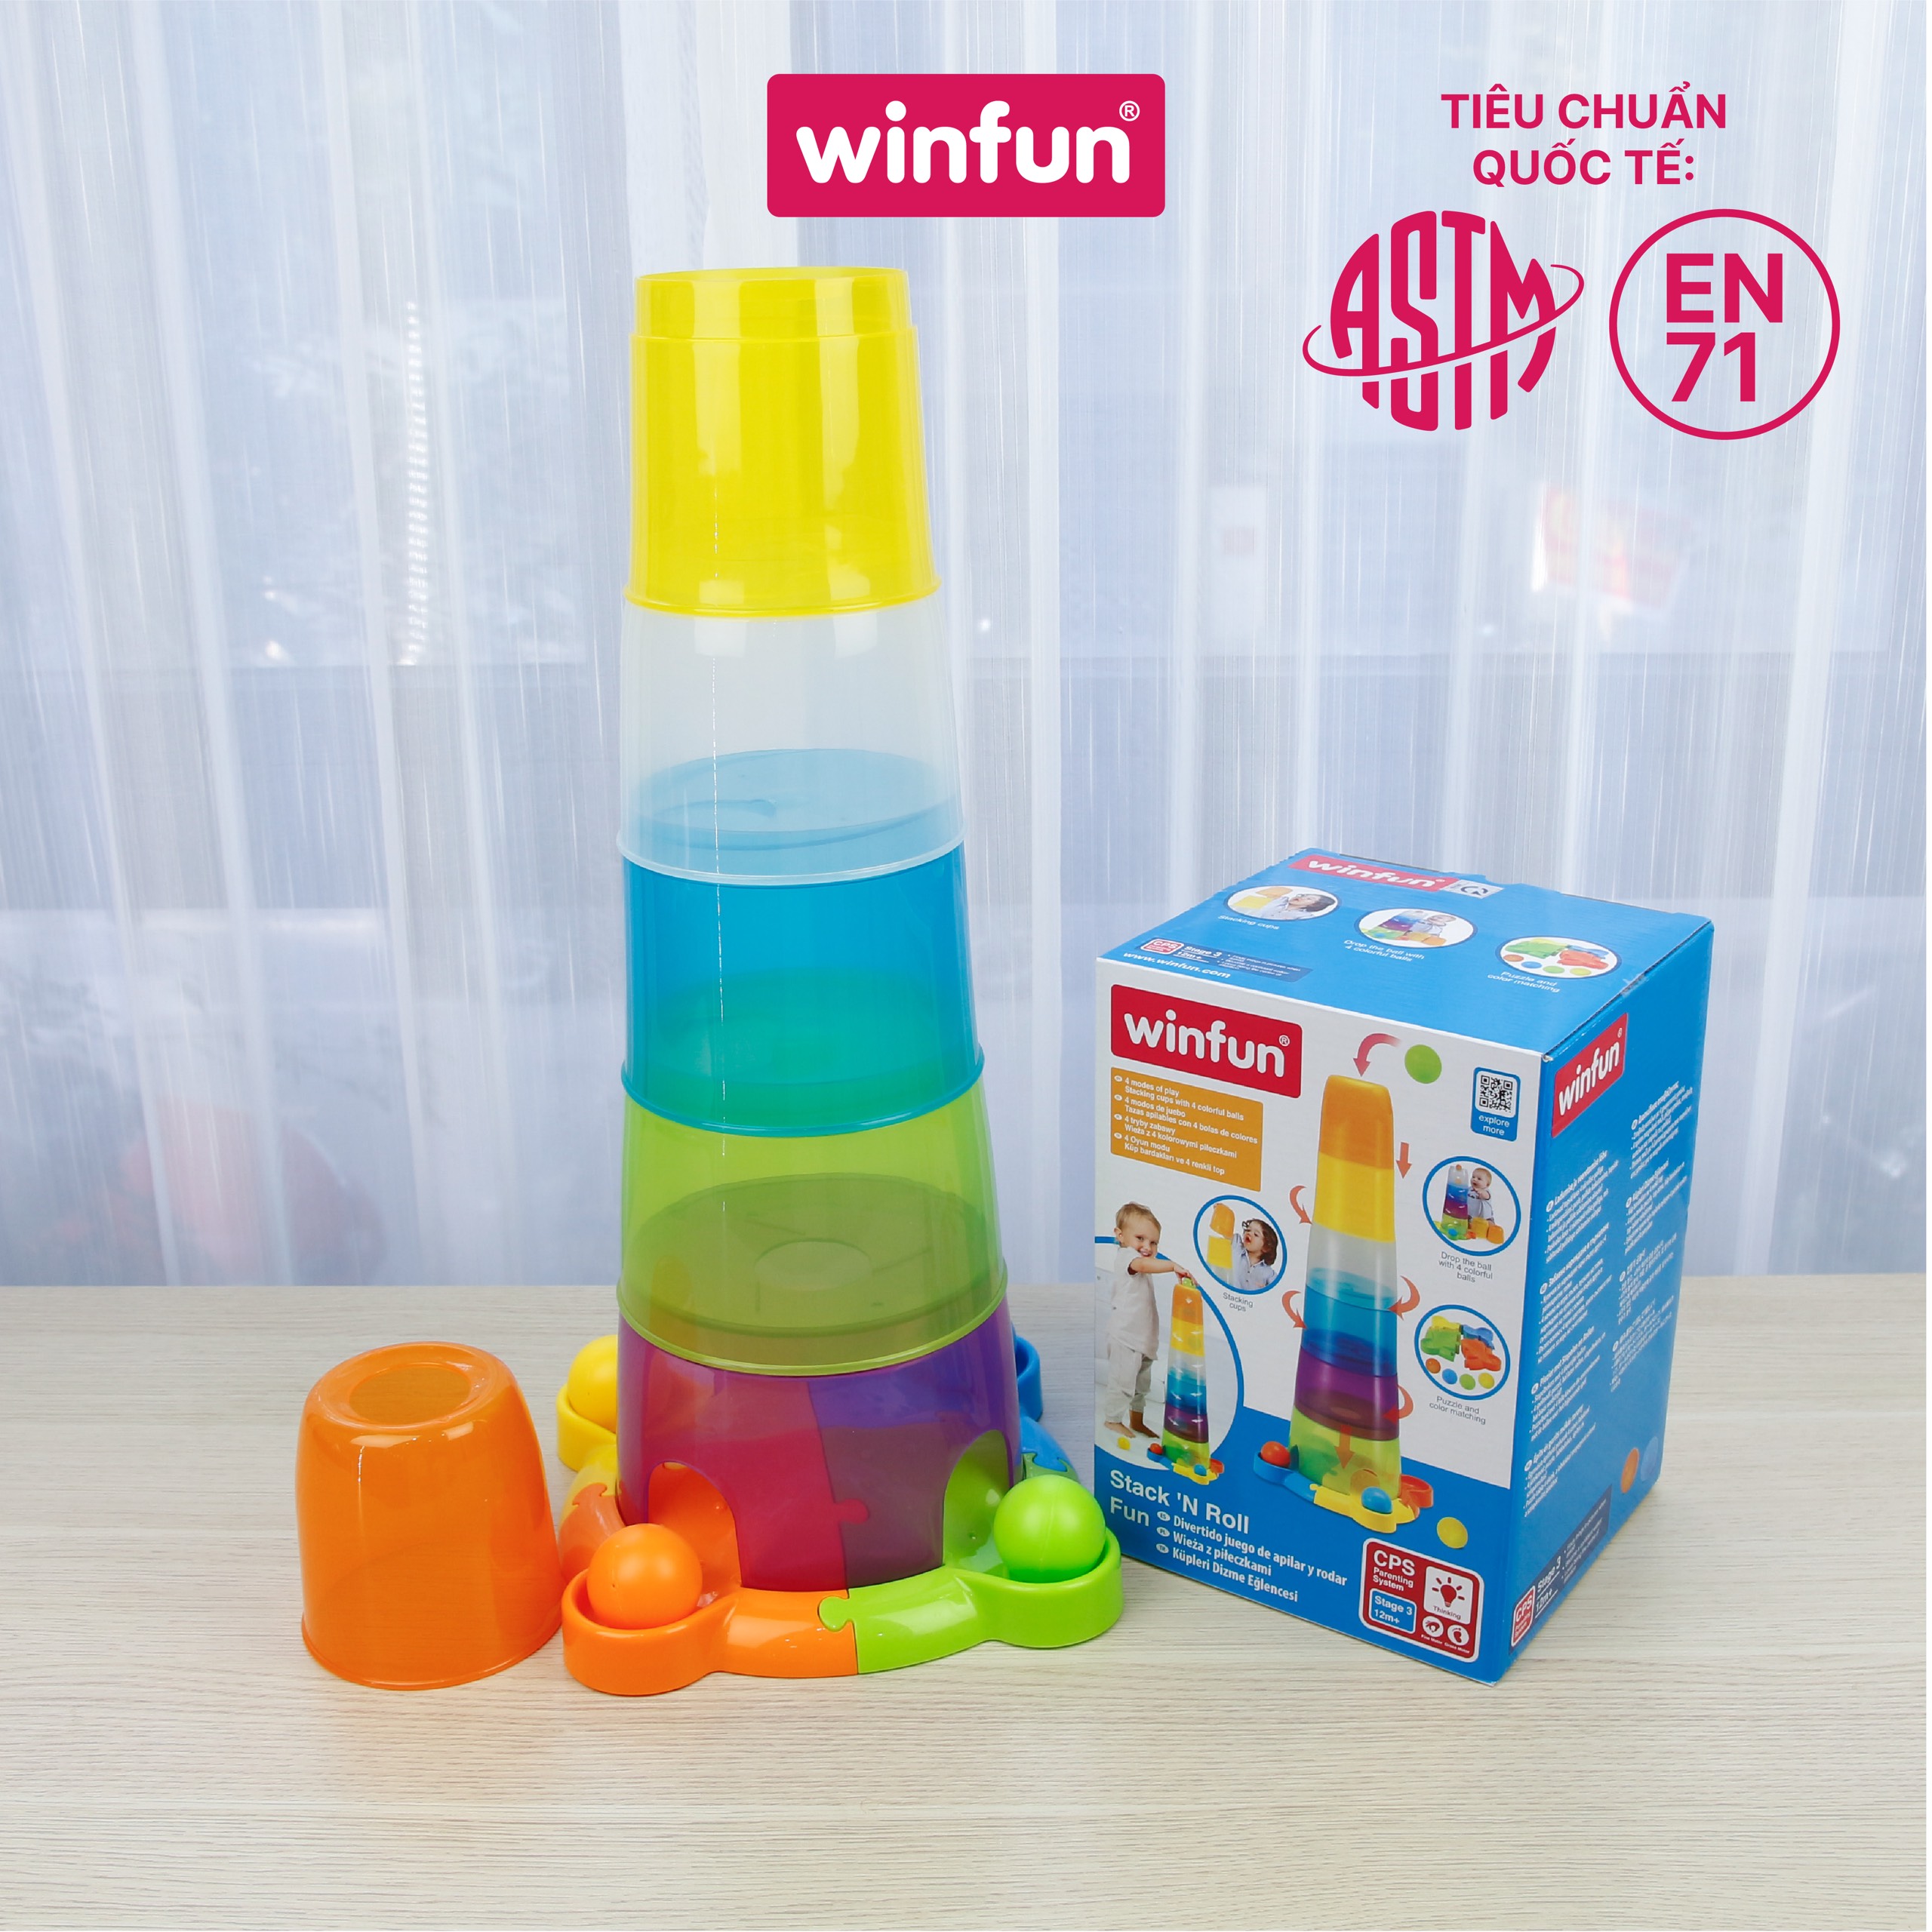 Tháp xếp chồng nhựa hình cốc kết hợp thả bóng vui nhộn winfun 0737 - 9 tới 24 tháng - đồ chơi giáo dục phát triển tư duy